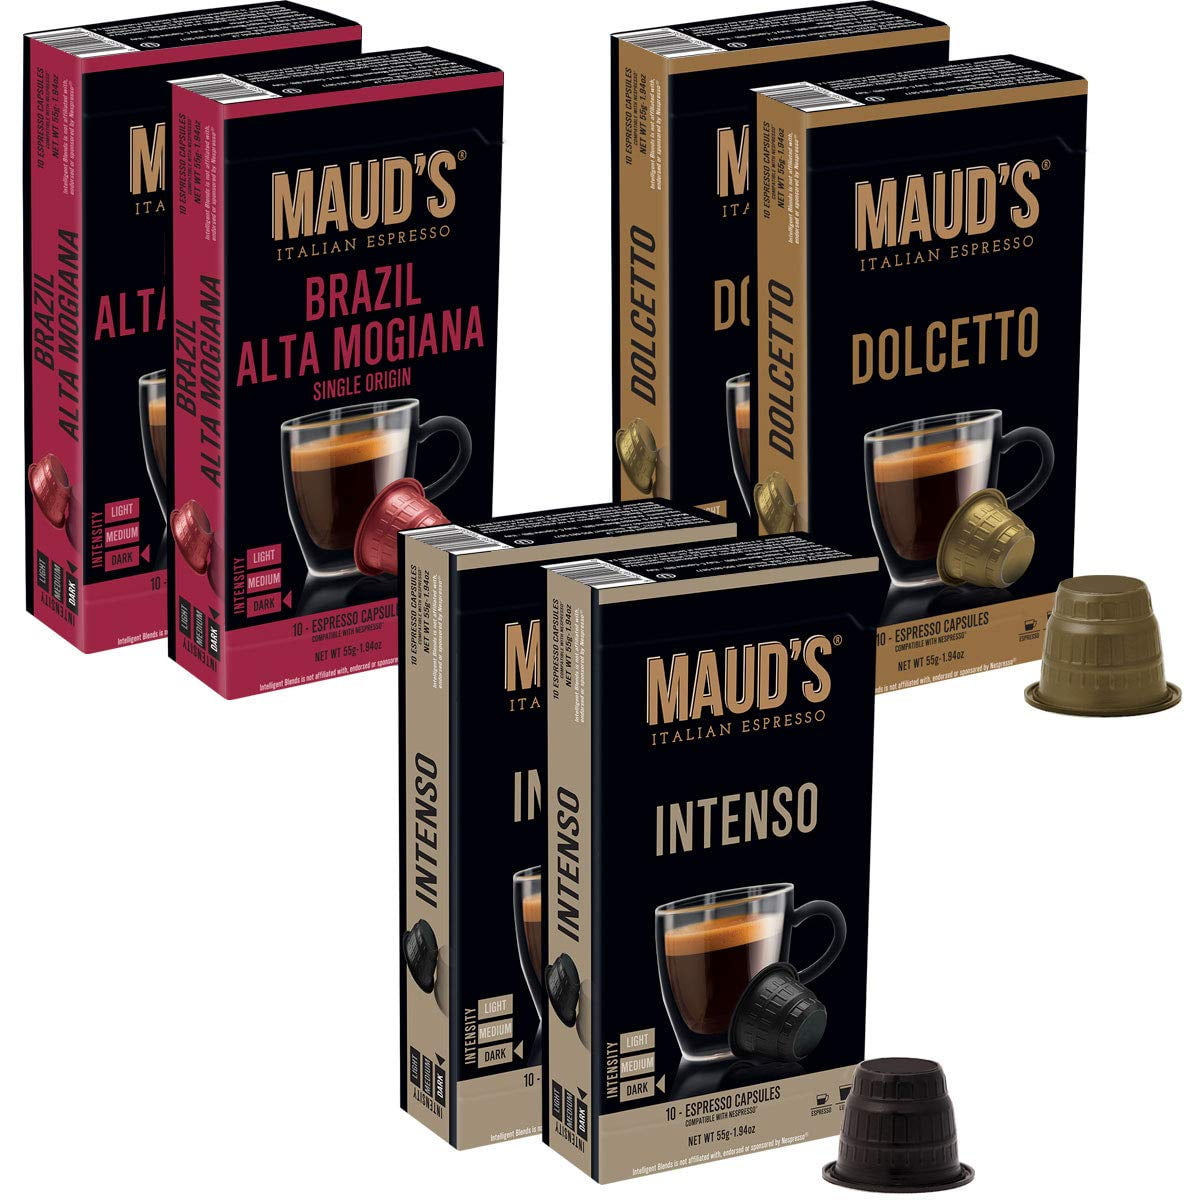 Maud's Espresso Capsules Variety Pack 60ct., (Intenso, Dolcetto, Brazil) 100% Hand-Crafted Arabica Coffee - Italian Espresso Capsules, Single Serve Espresso Pods, Original Machine Nespresso Compatible